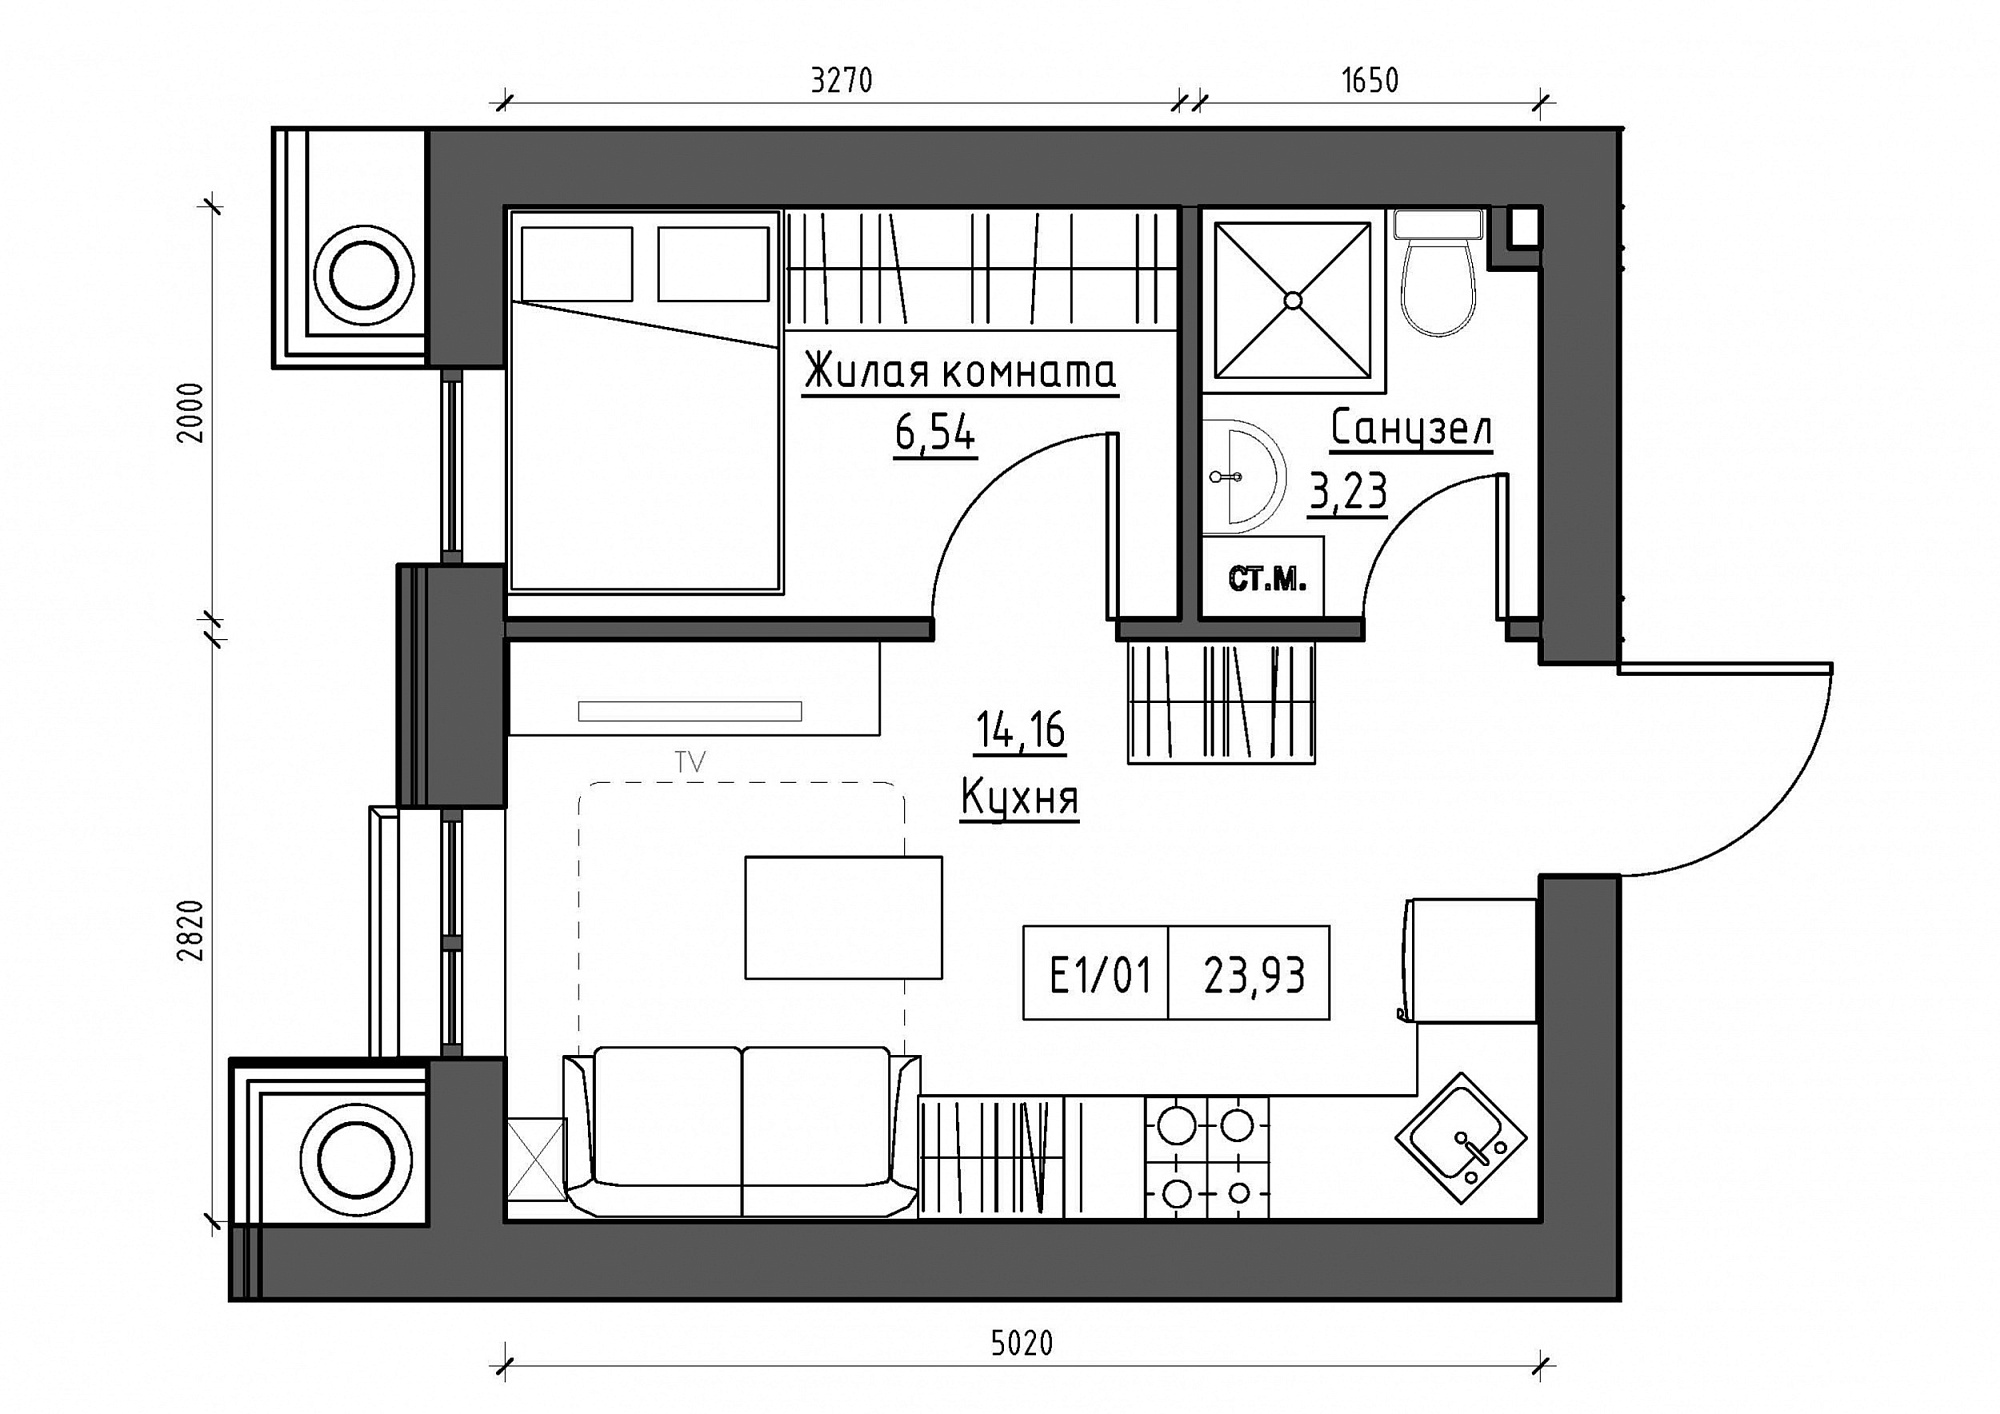 Планування 1-к квартира площею 23.93м2, KS-012-03/0012.